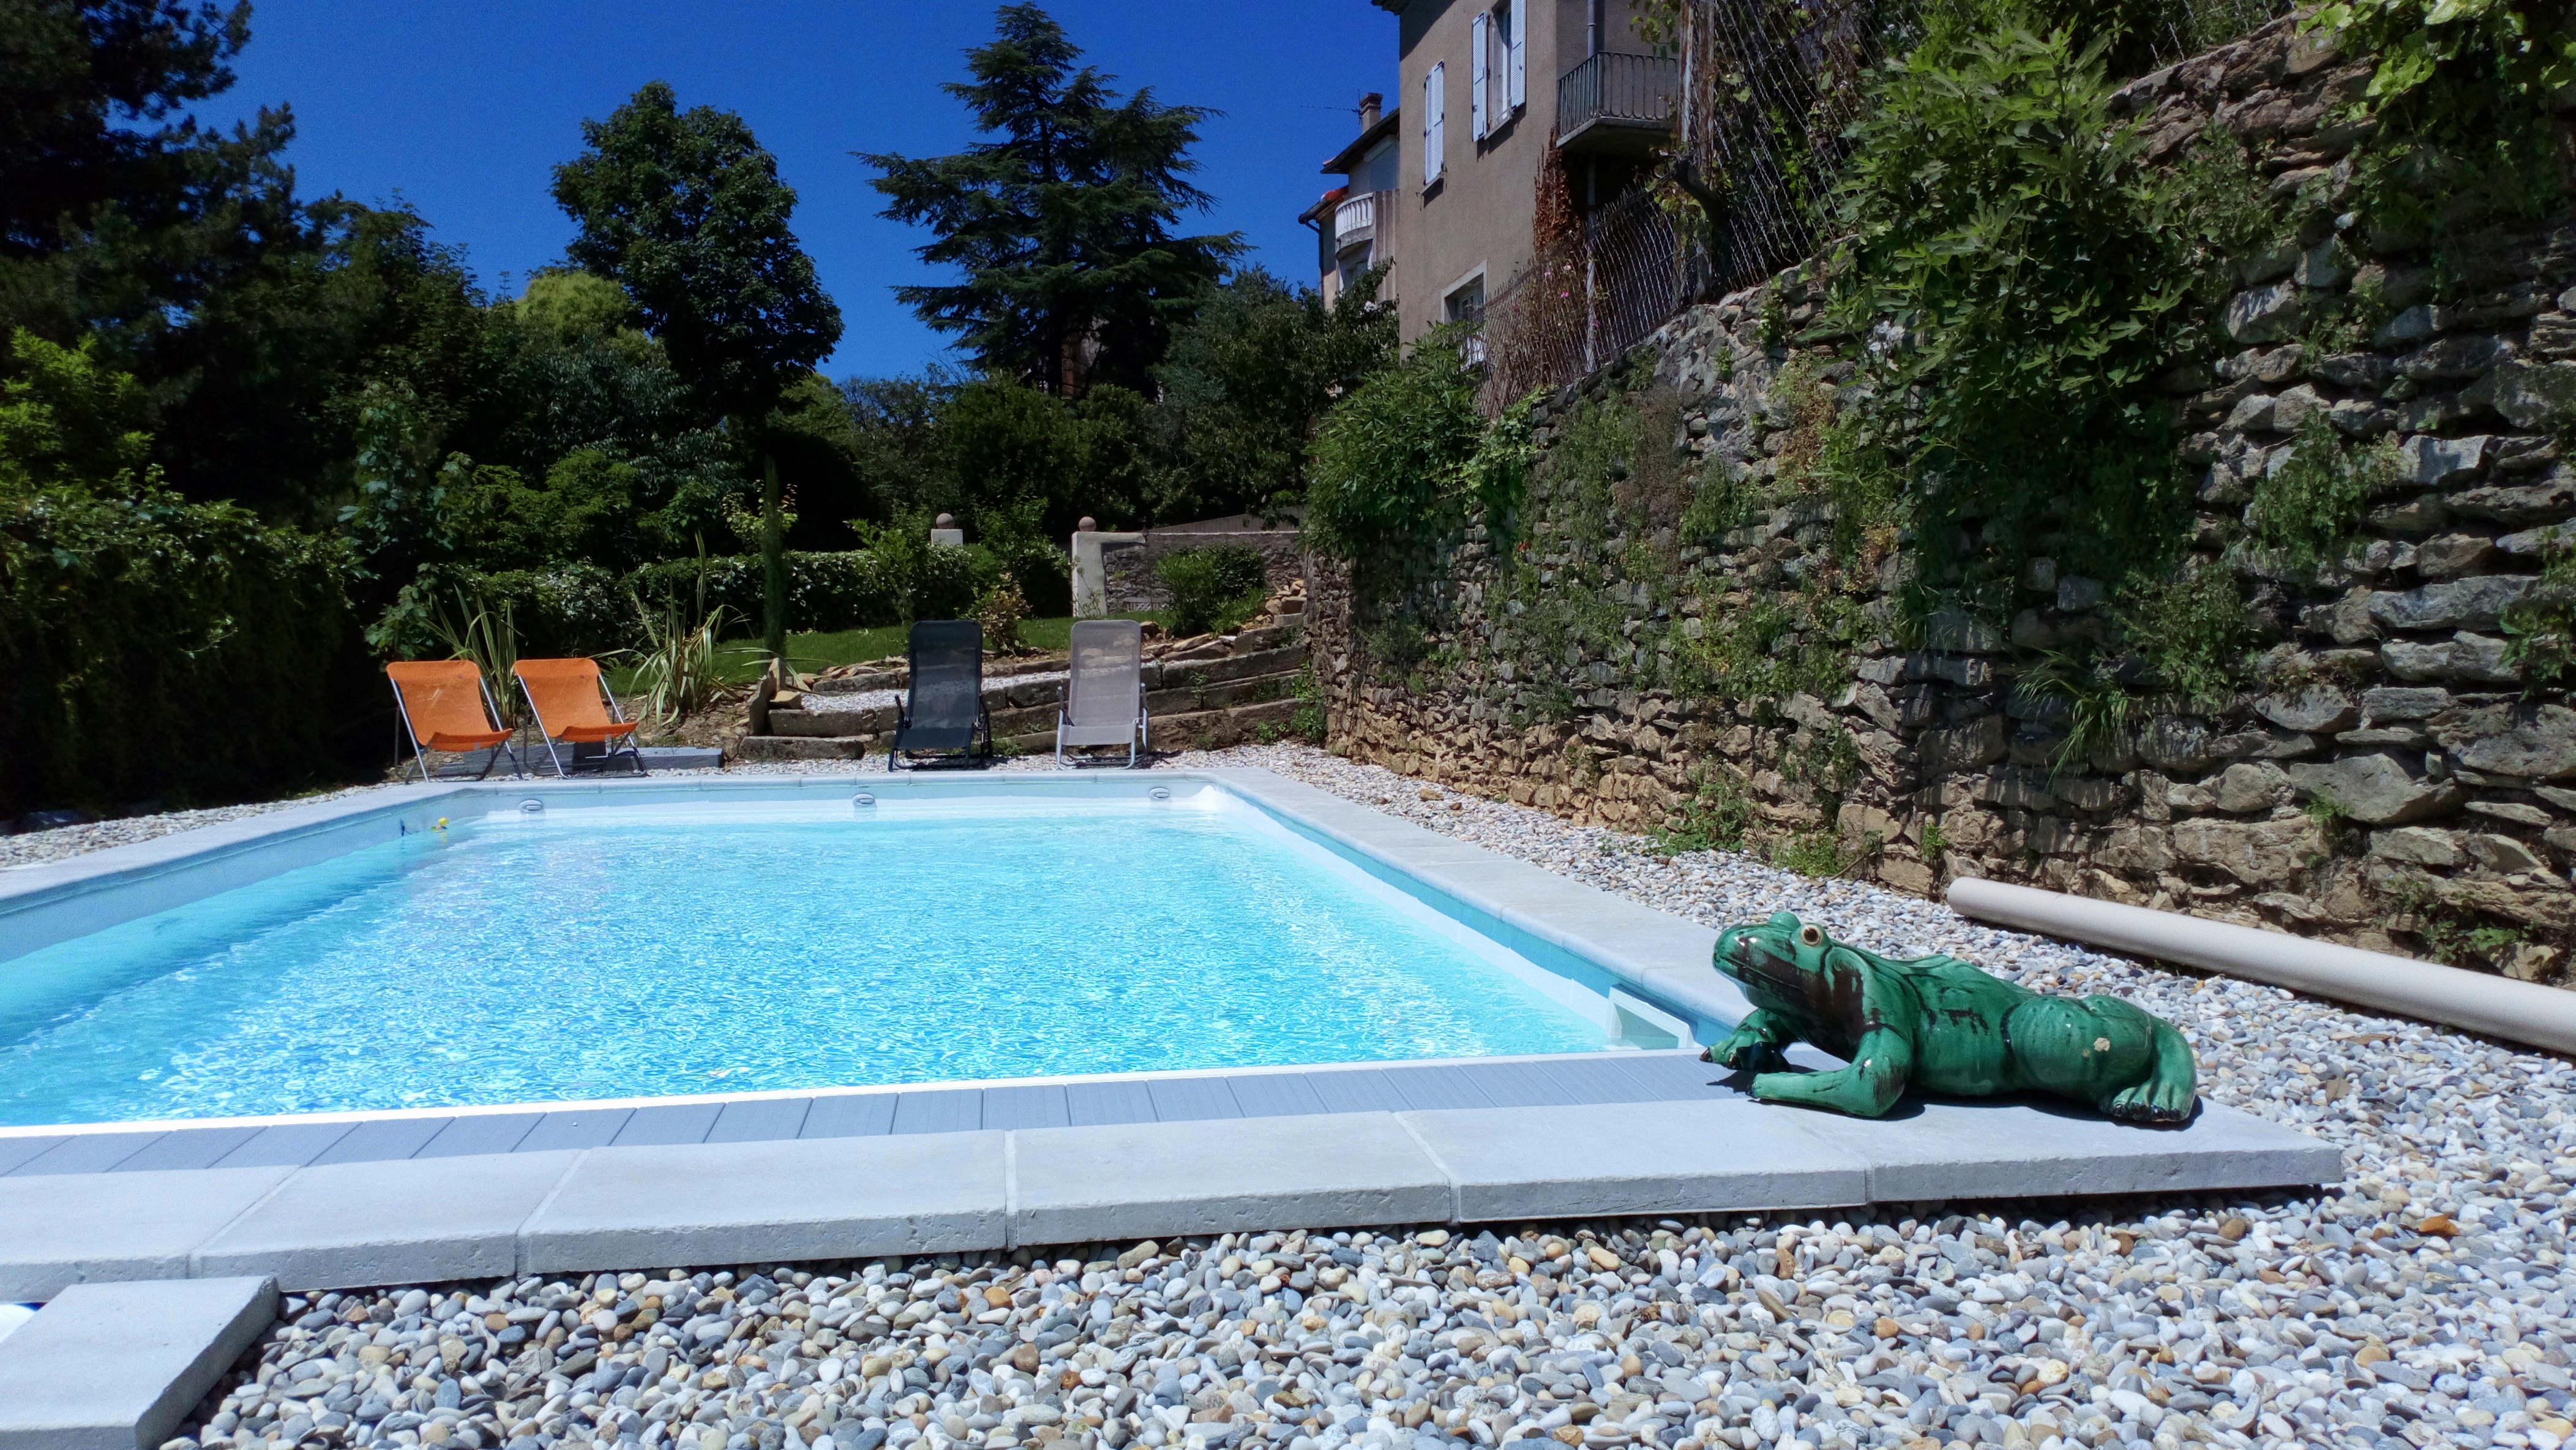 Chambres d'hôtes à Privas en Ardèche Buissonnière. : Maison Jaffran suite en ville